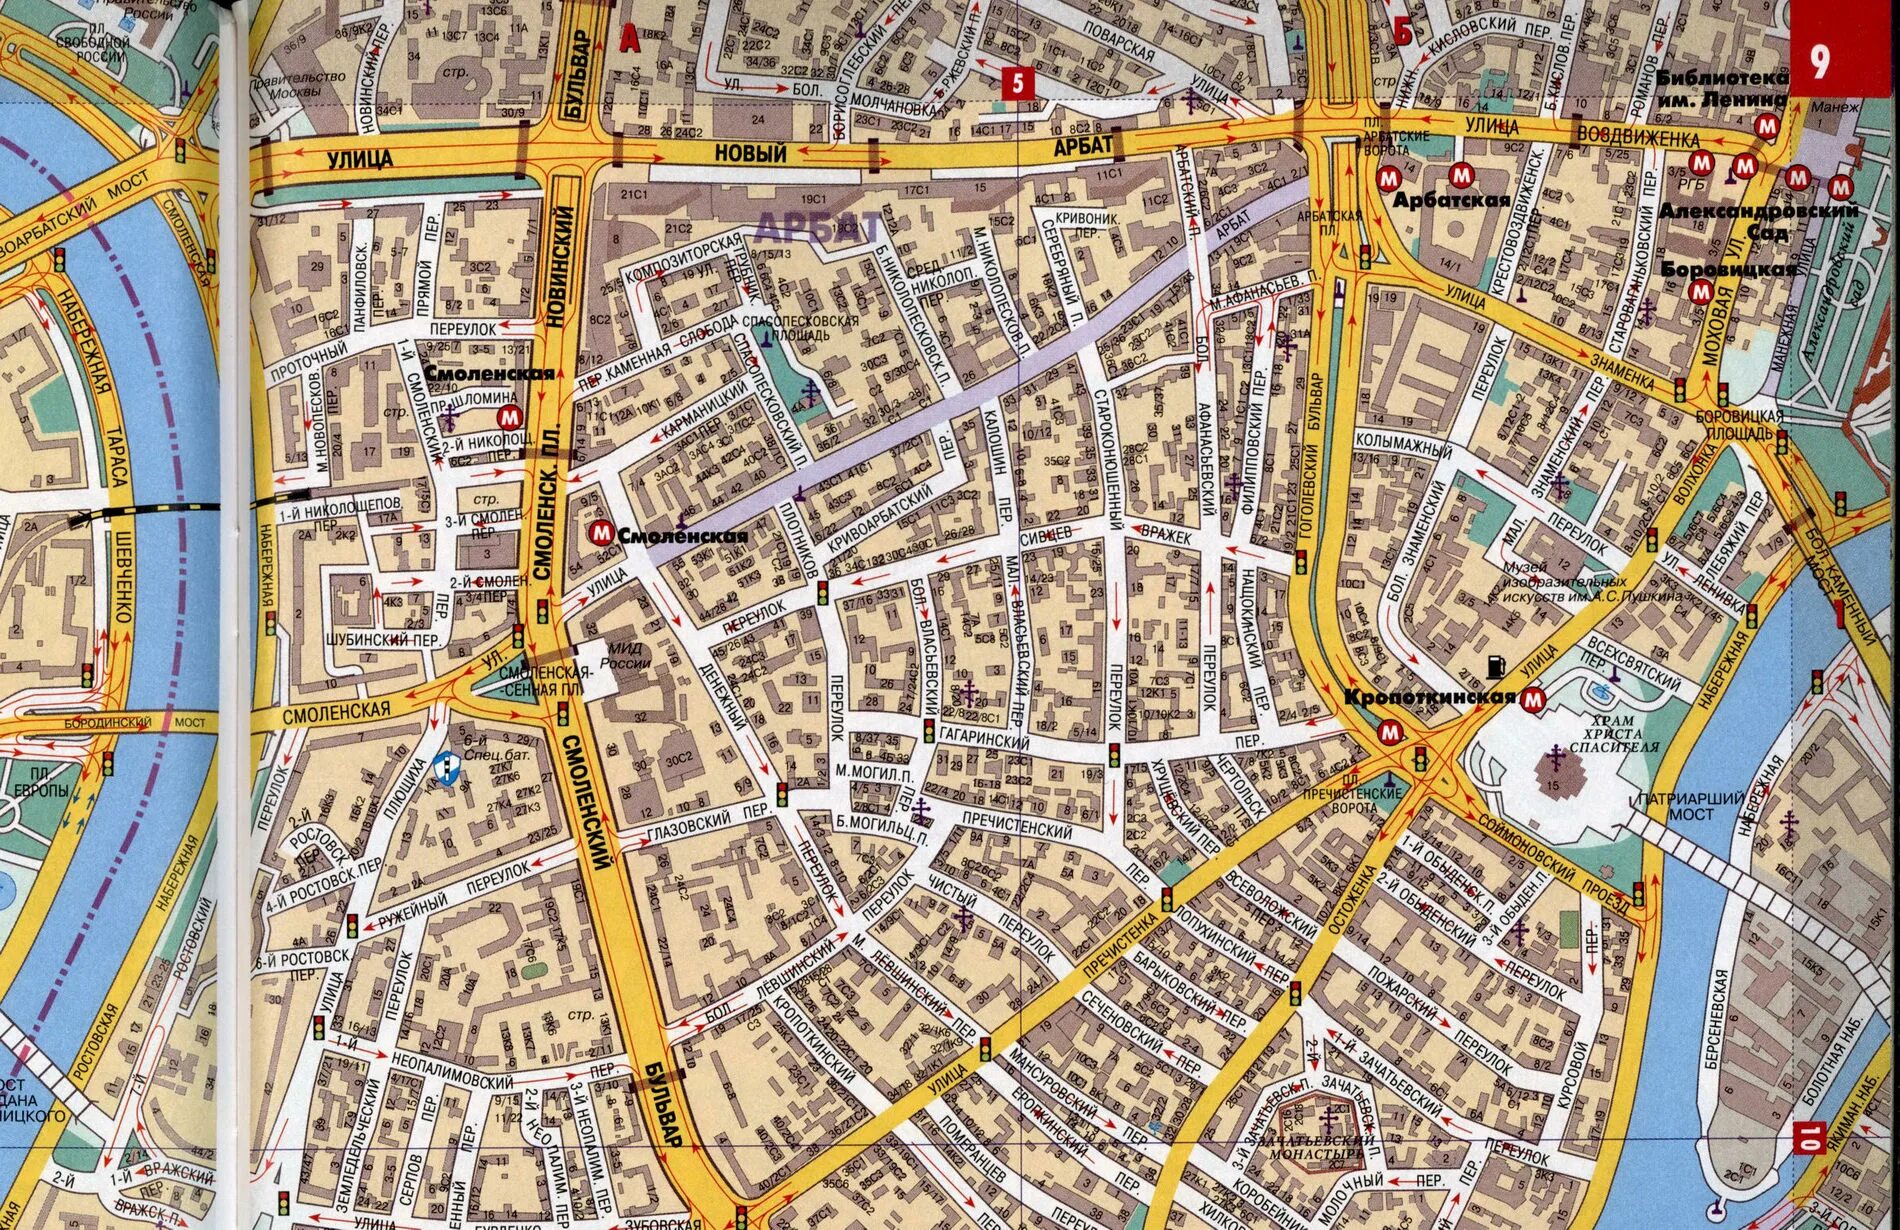 Тверская 1 на карте. Старый Арбат на карте. Карта района Арбат. Старый Арбат на карте Москвы. Улица старый Арбат на карте.